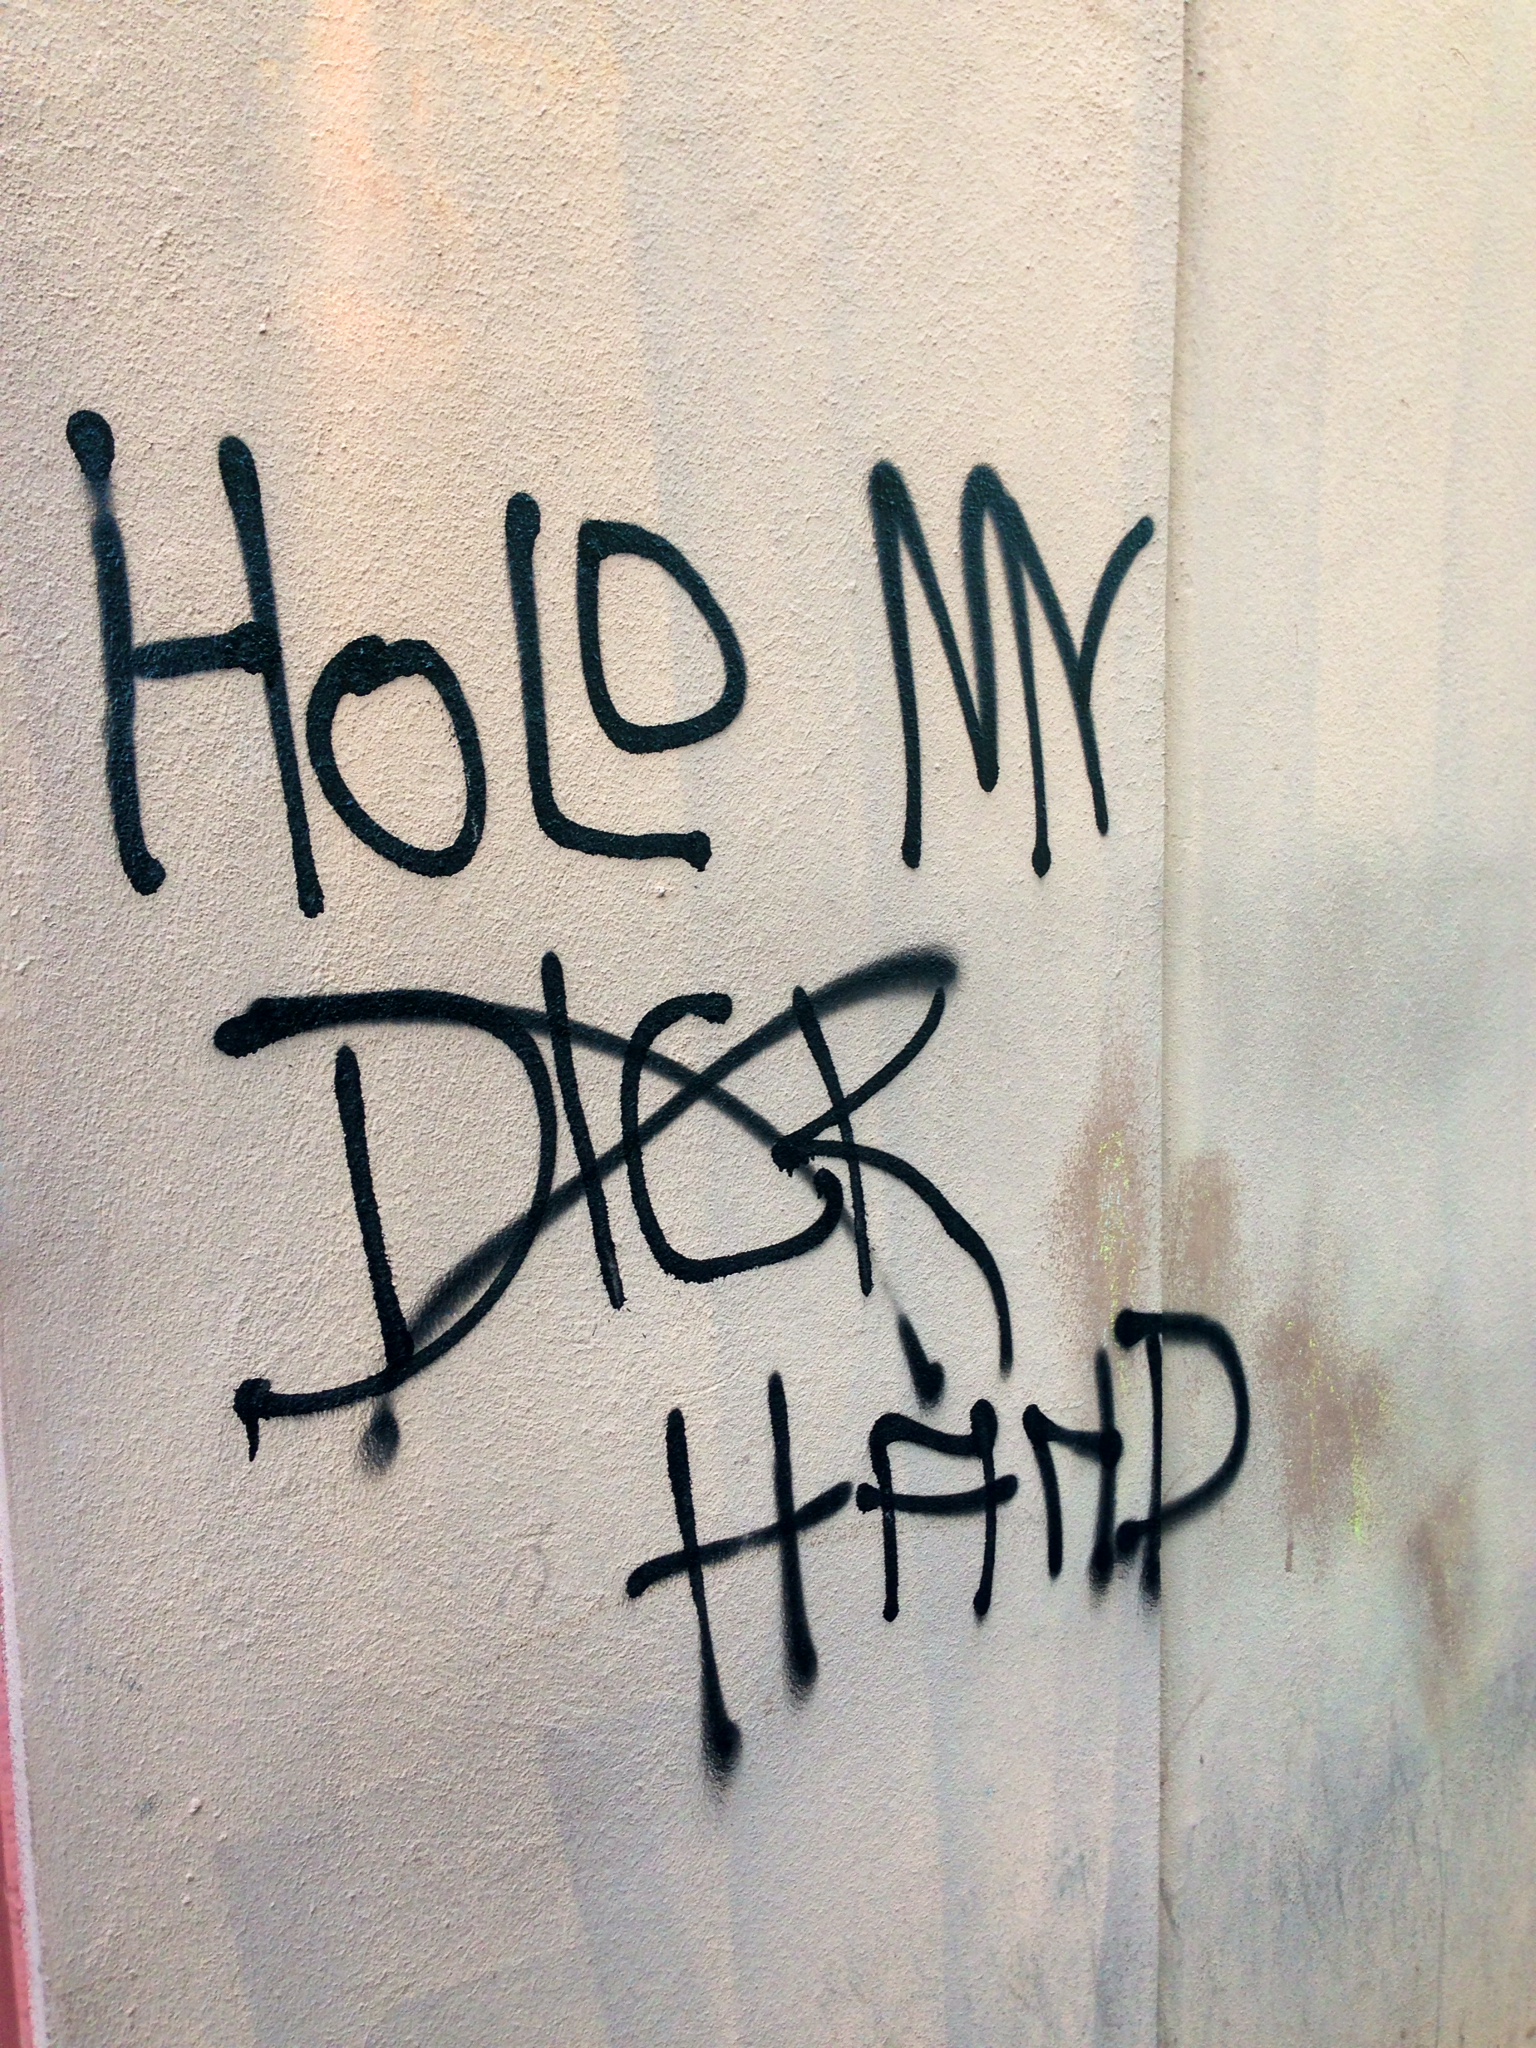 An "inspirational" graffiti message downtown 